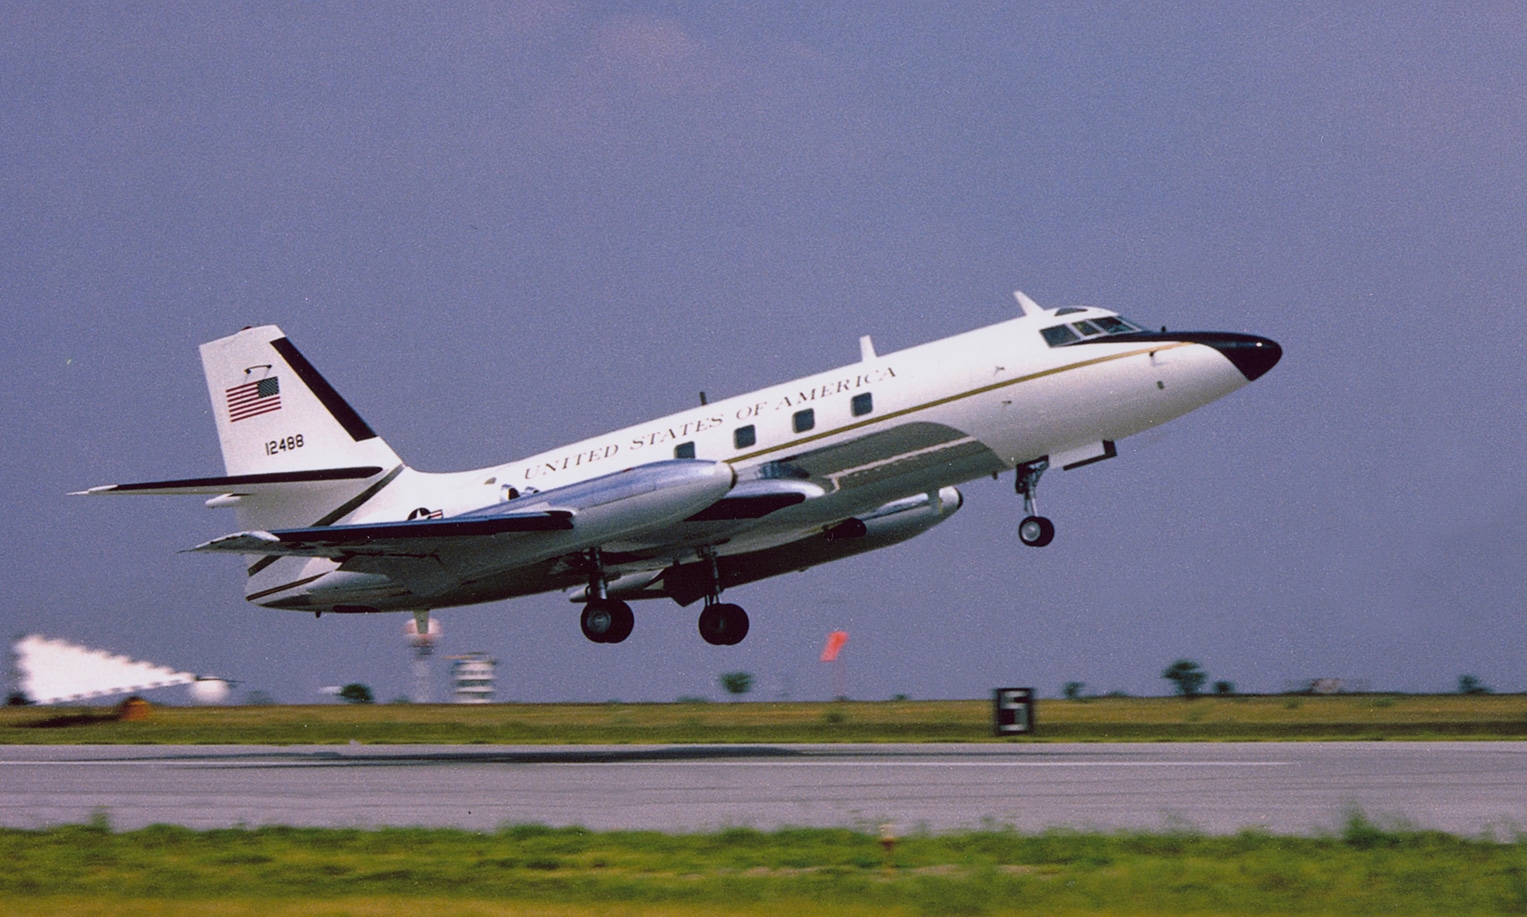 JetStar 61-2488 in the 1970s.